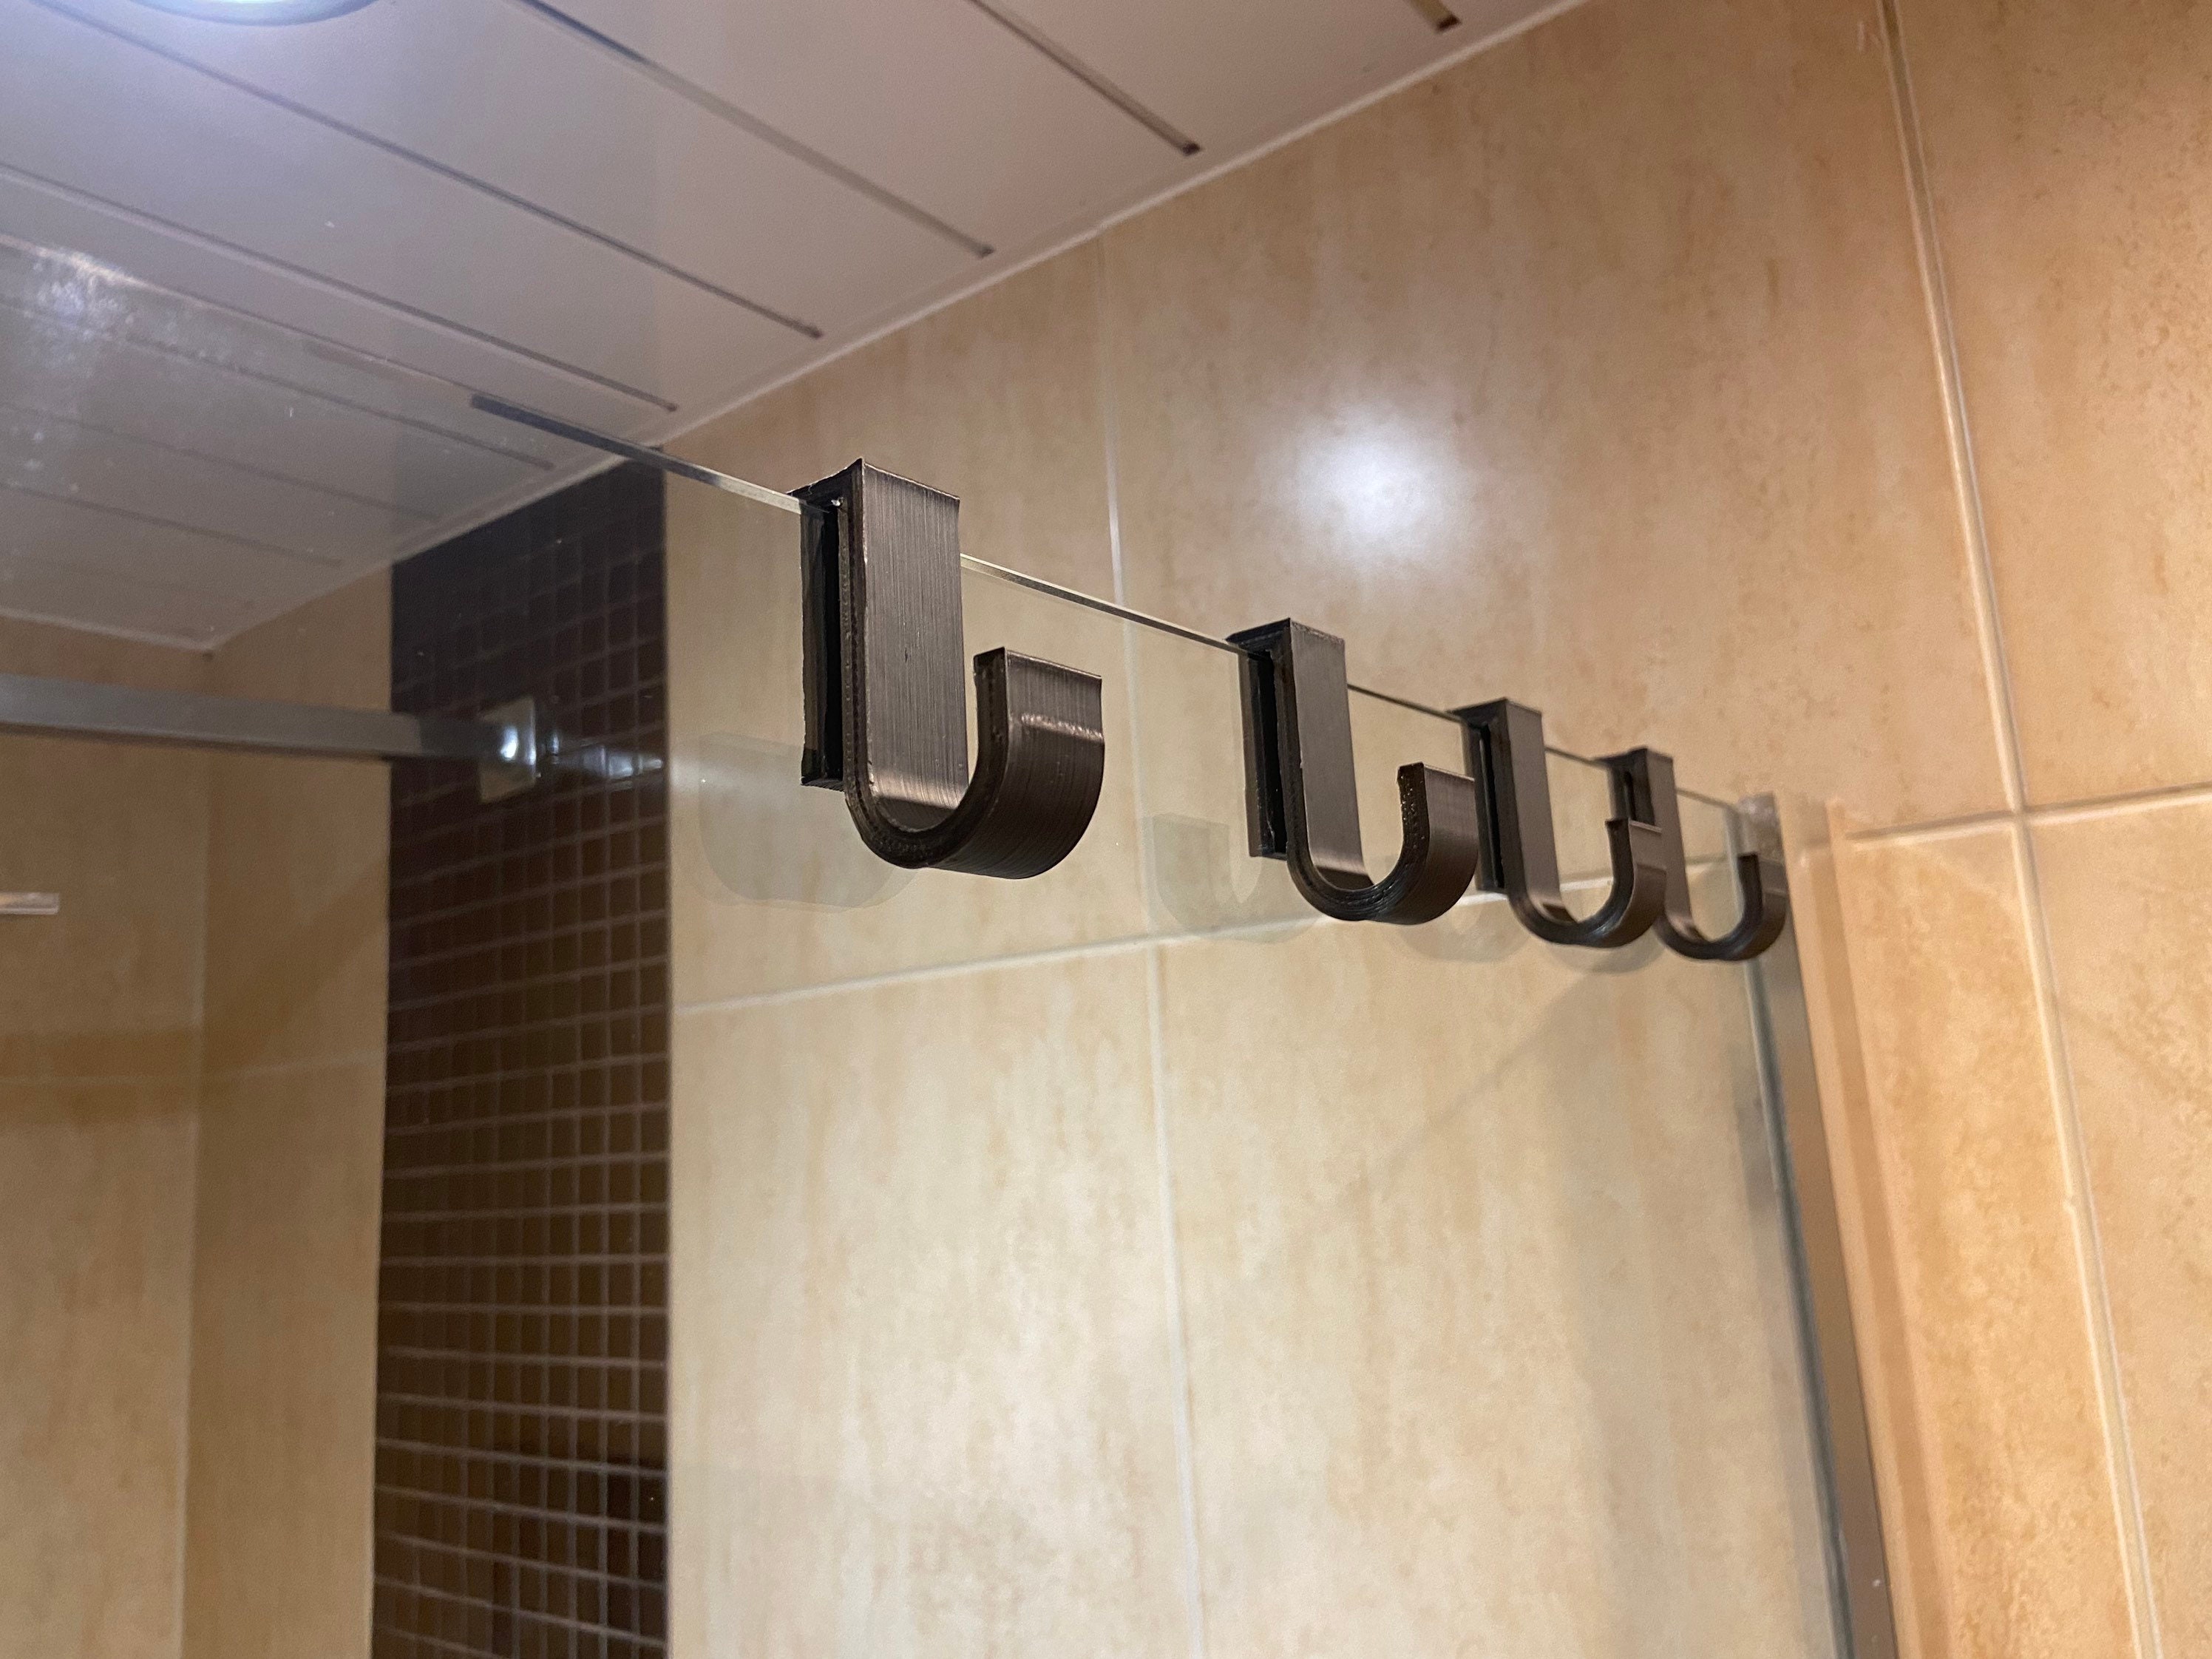 Taozun Shower Door Hooks - Over The Door Hooks for Shower Towel Hooks for  Bathroom Frameless Glass Shower Door, Shower Squeegee Hooks Stainless Steel